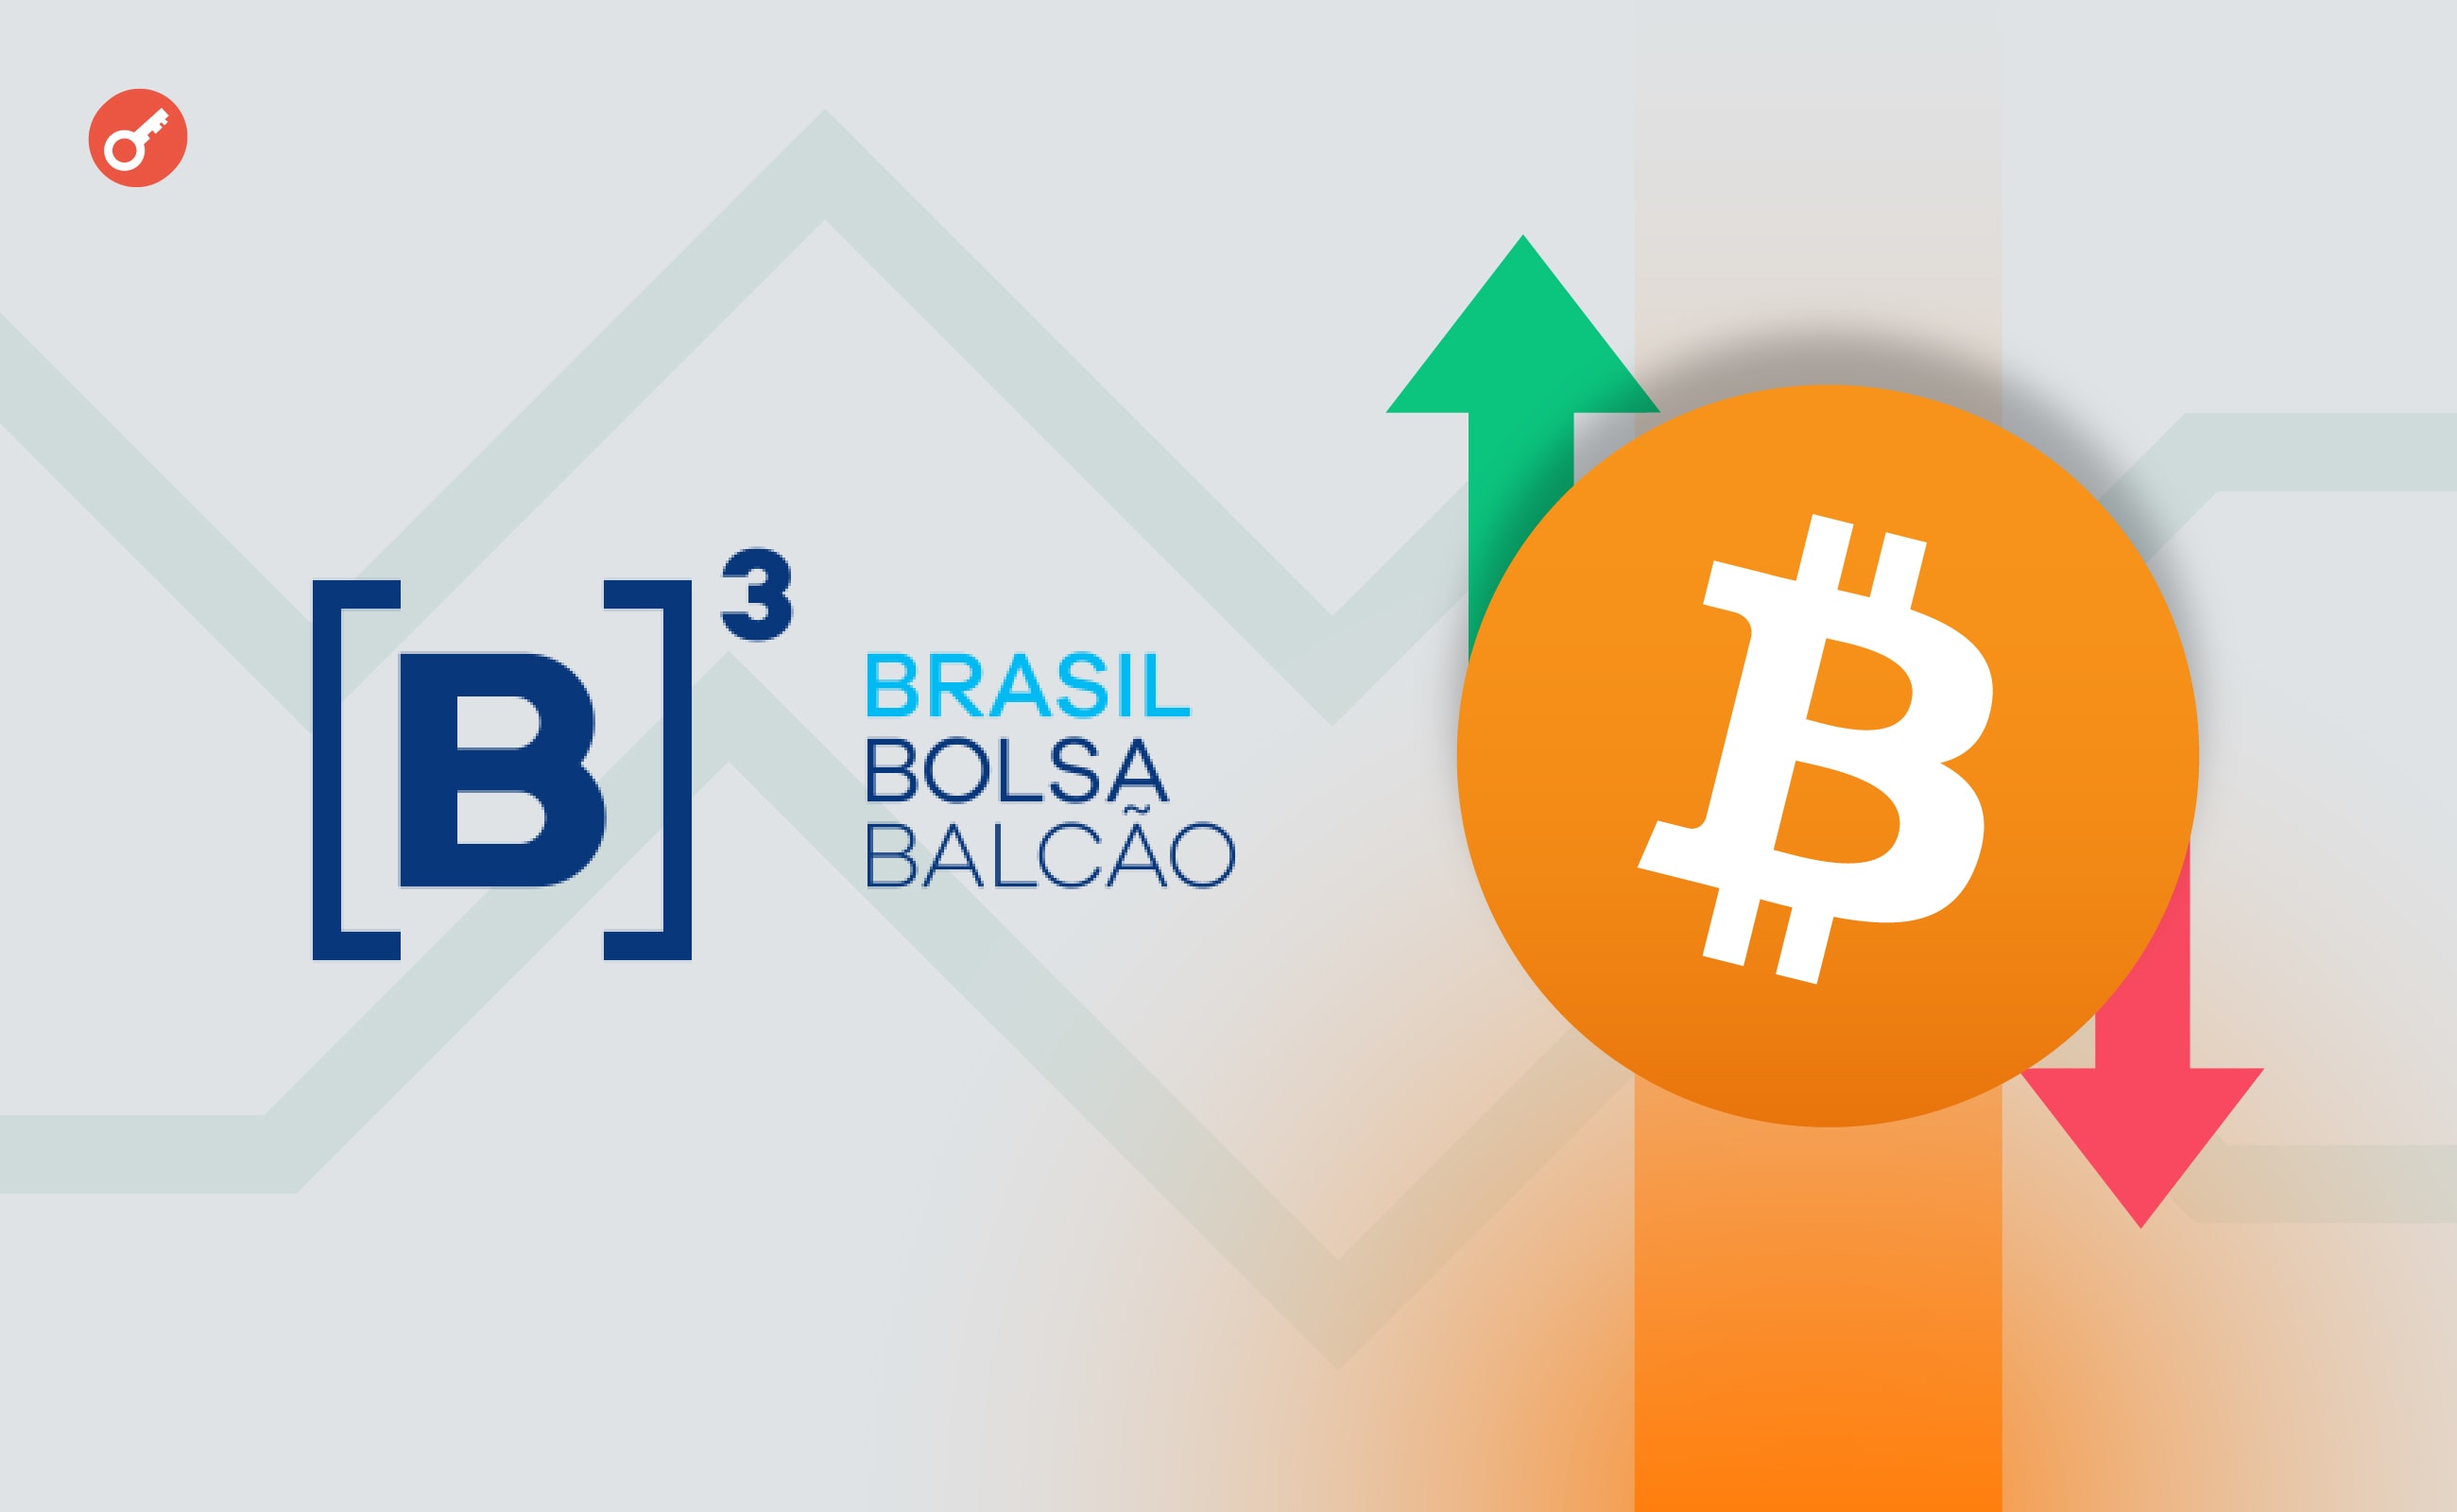 Бразильская биржа B3 разрешит торговлю биткоин-фьючерсами  . Заглавный коллаж новости.